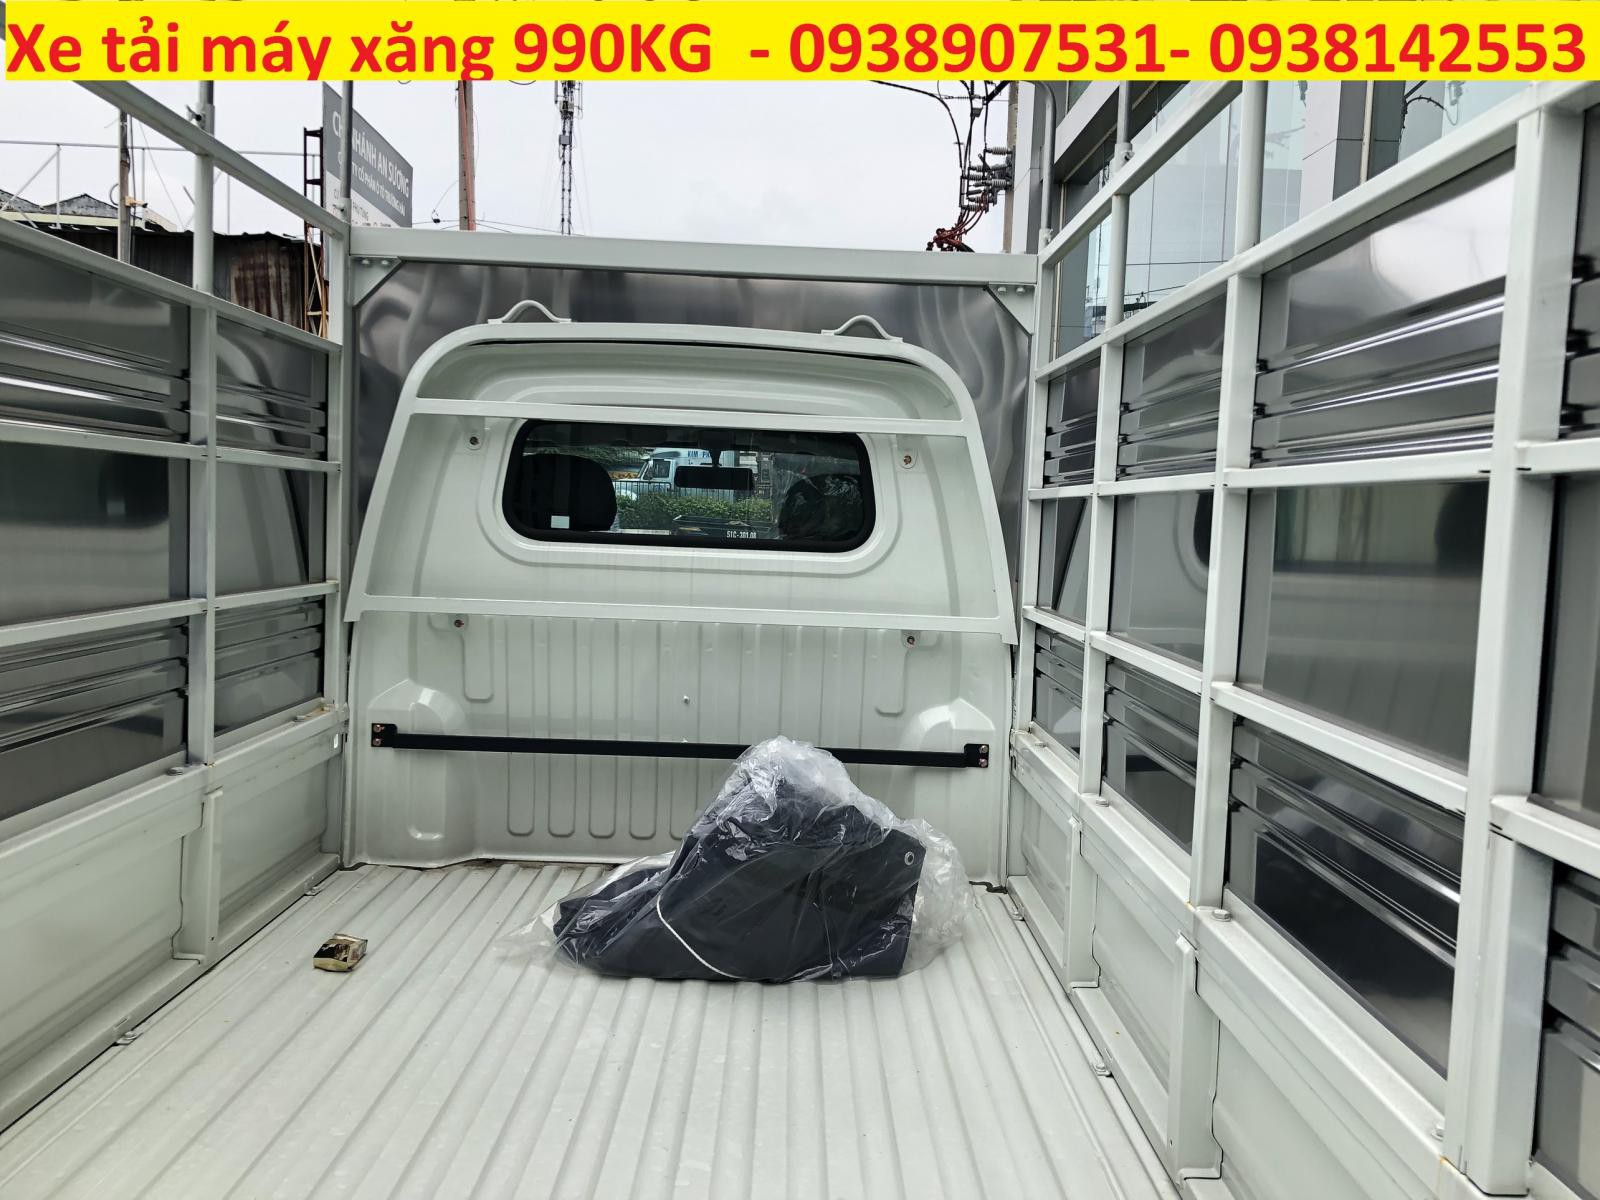 Thaco TOWNER 2020 - Cần bán xe tải 990kg Thaco Towner 990 thùng mui bạt giá tốt tại Thaco An Sương